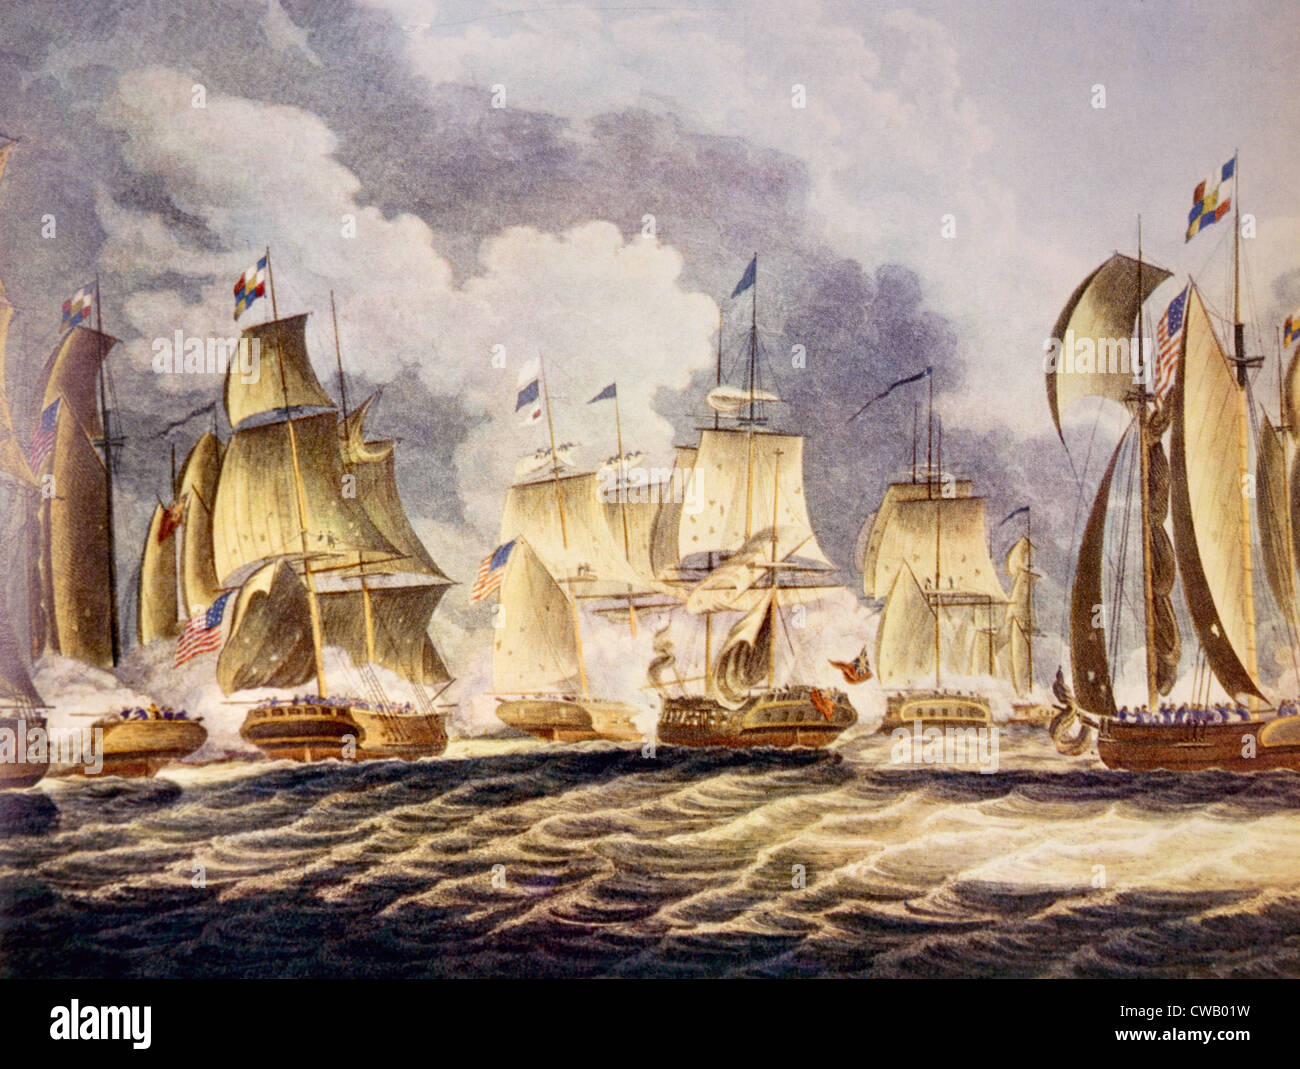 La batalla del lago Erie, el comodoro Perry's abandonado acorazado 'Lawrence' a la derecha, 1813 Foto de stock